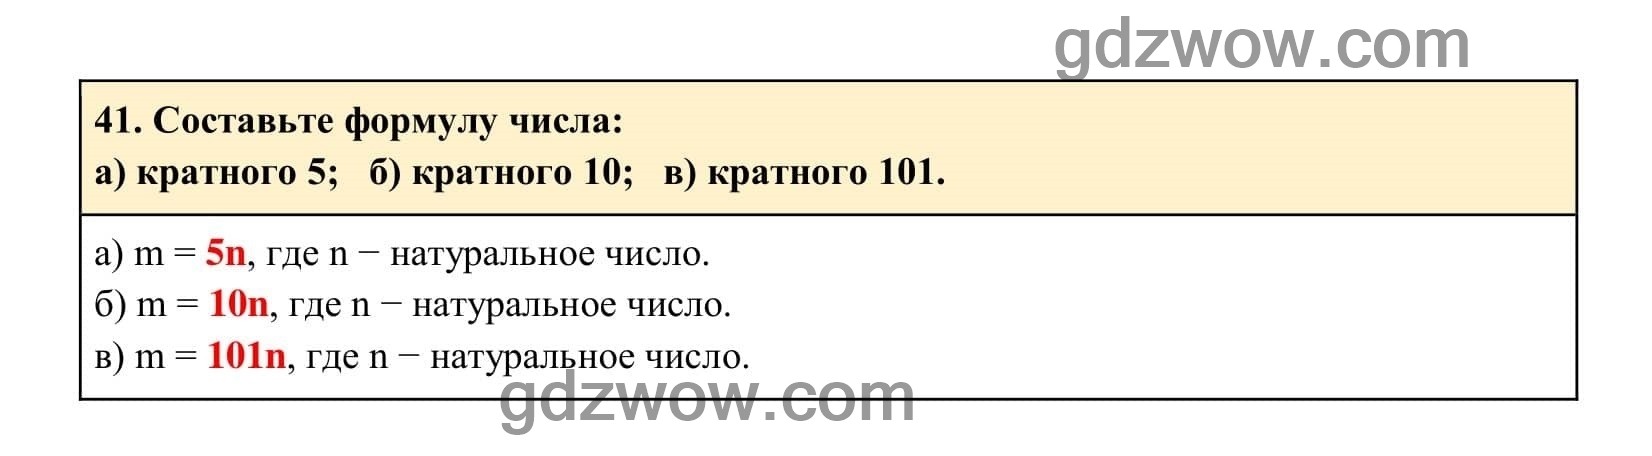 Упражнение 41 - ГДЗ по Алгебре 7 класс Учебник Макарычев (решебник) - GDZwow